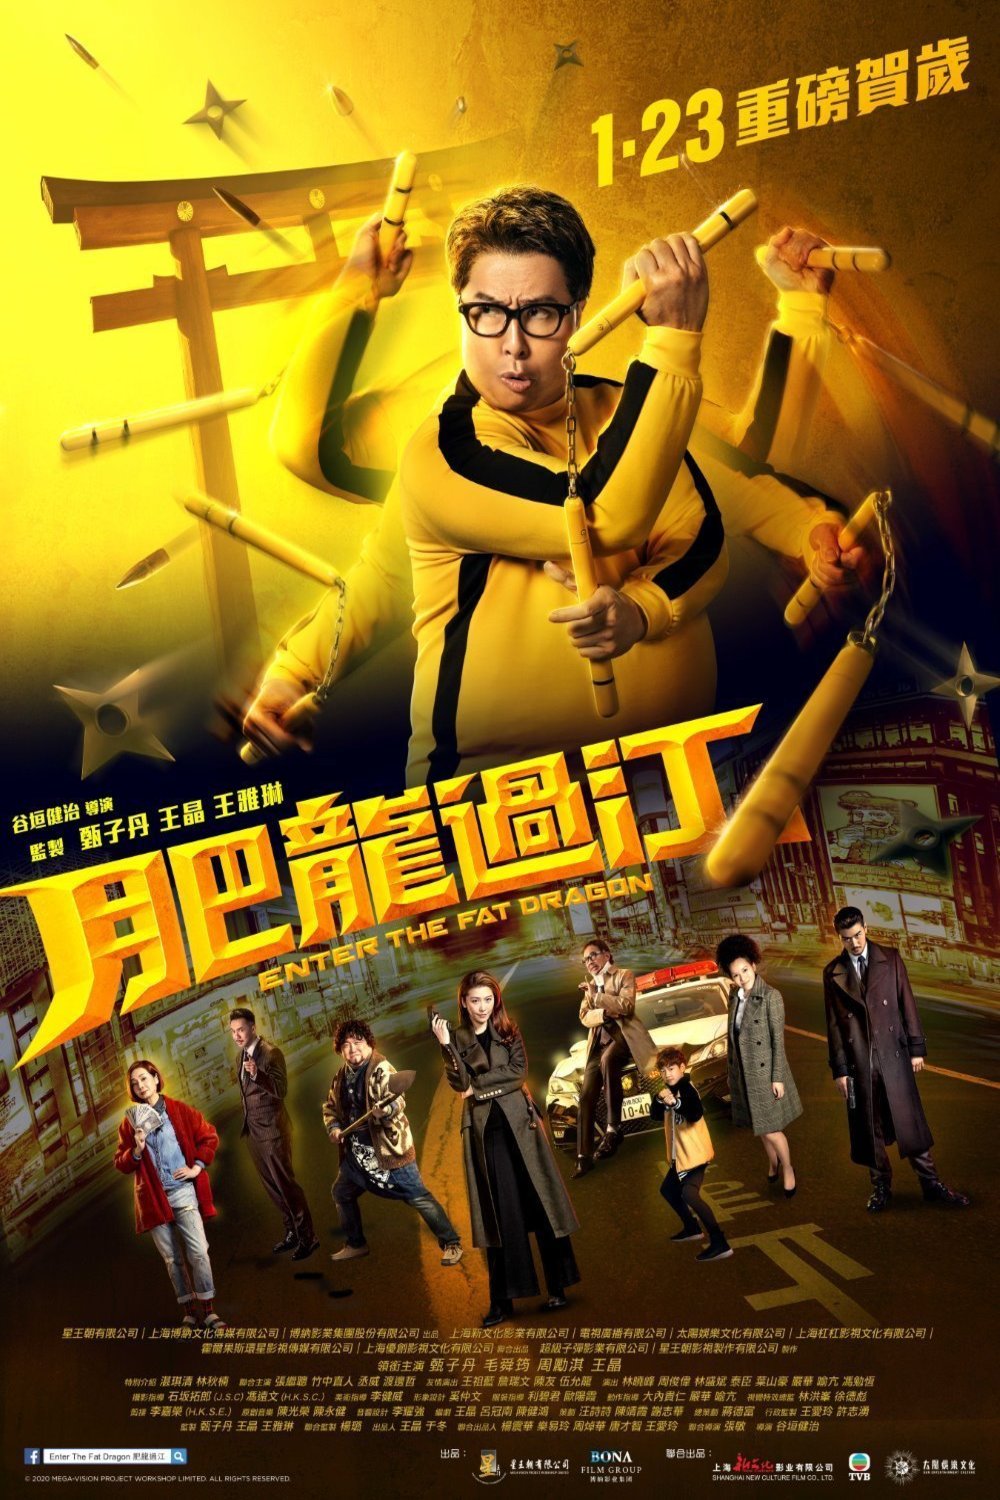 L'affiche originale du film Fei lung gwoh gong en Cantonais